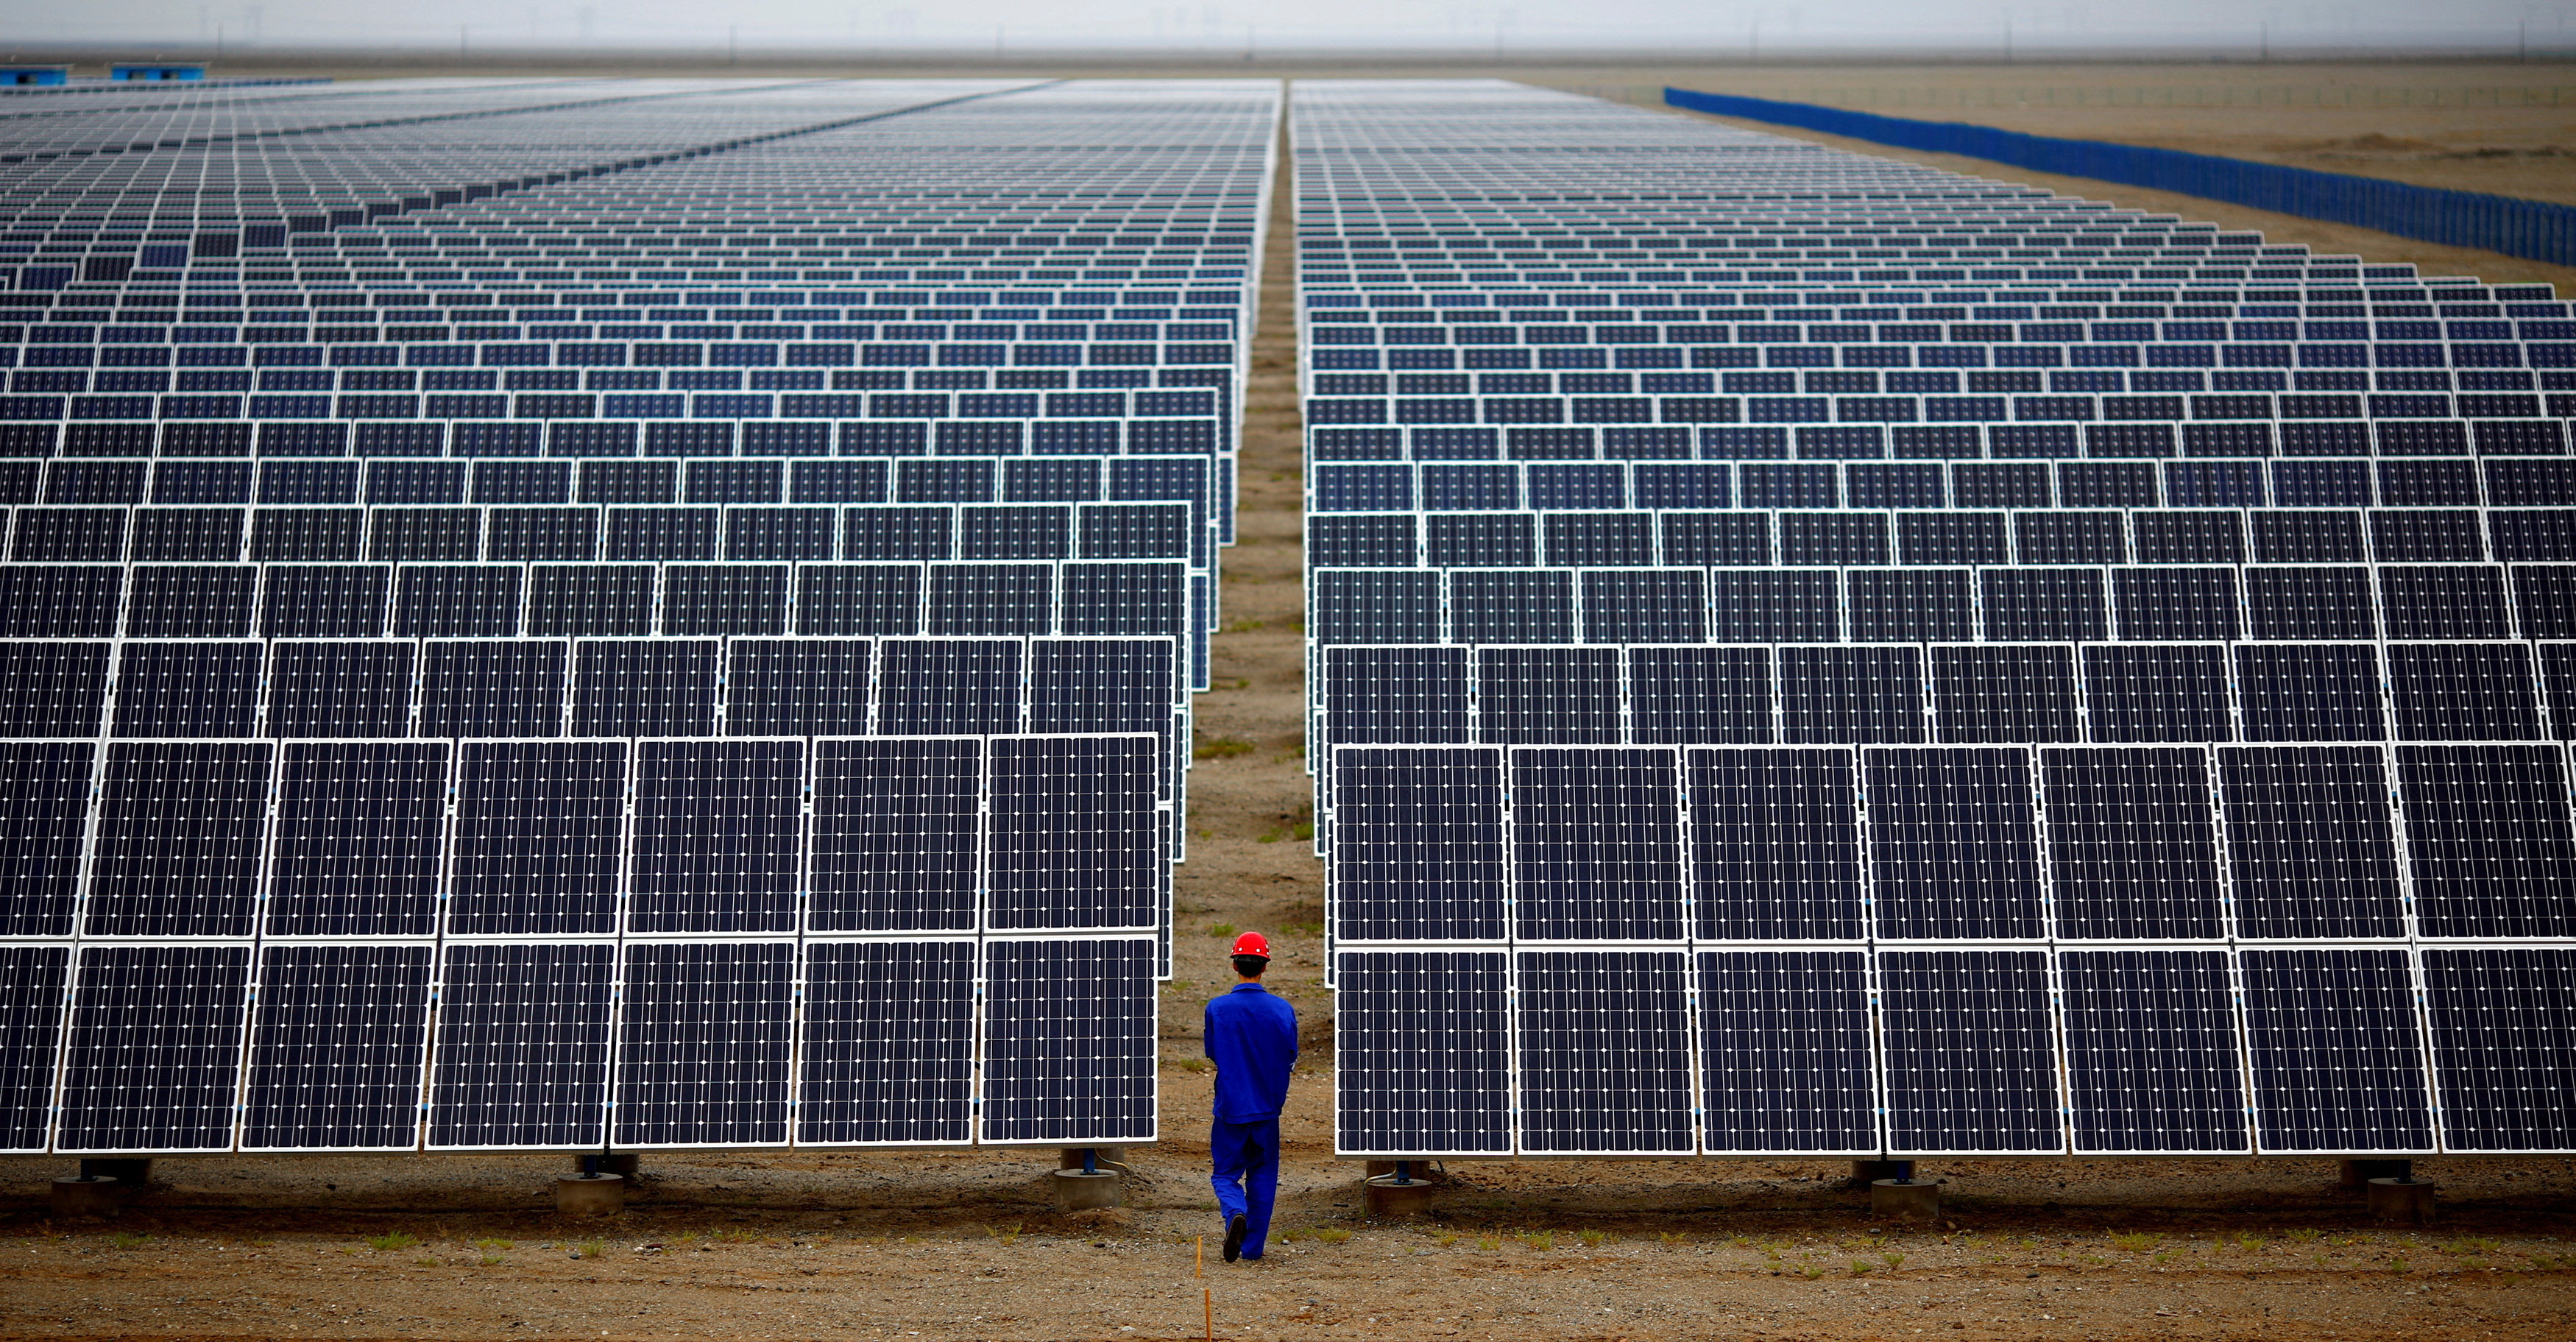 Một công nhân kiểm tra các tấm pin mặt trời tại trang trại năng lượng mặt trời ở Đôn Hoàng, cách Lan Châu, tỉnh Cam Túc 950km về phía tây bắc